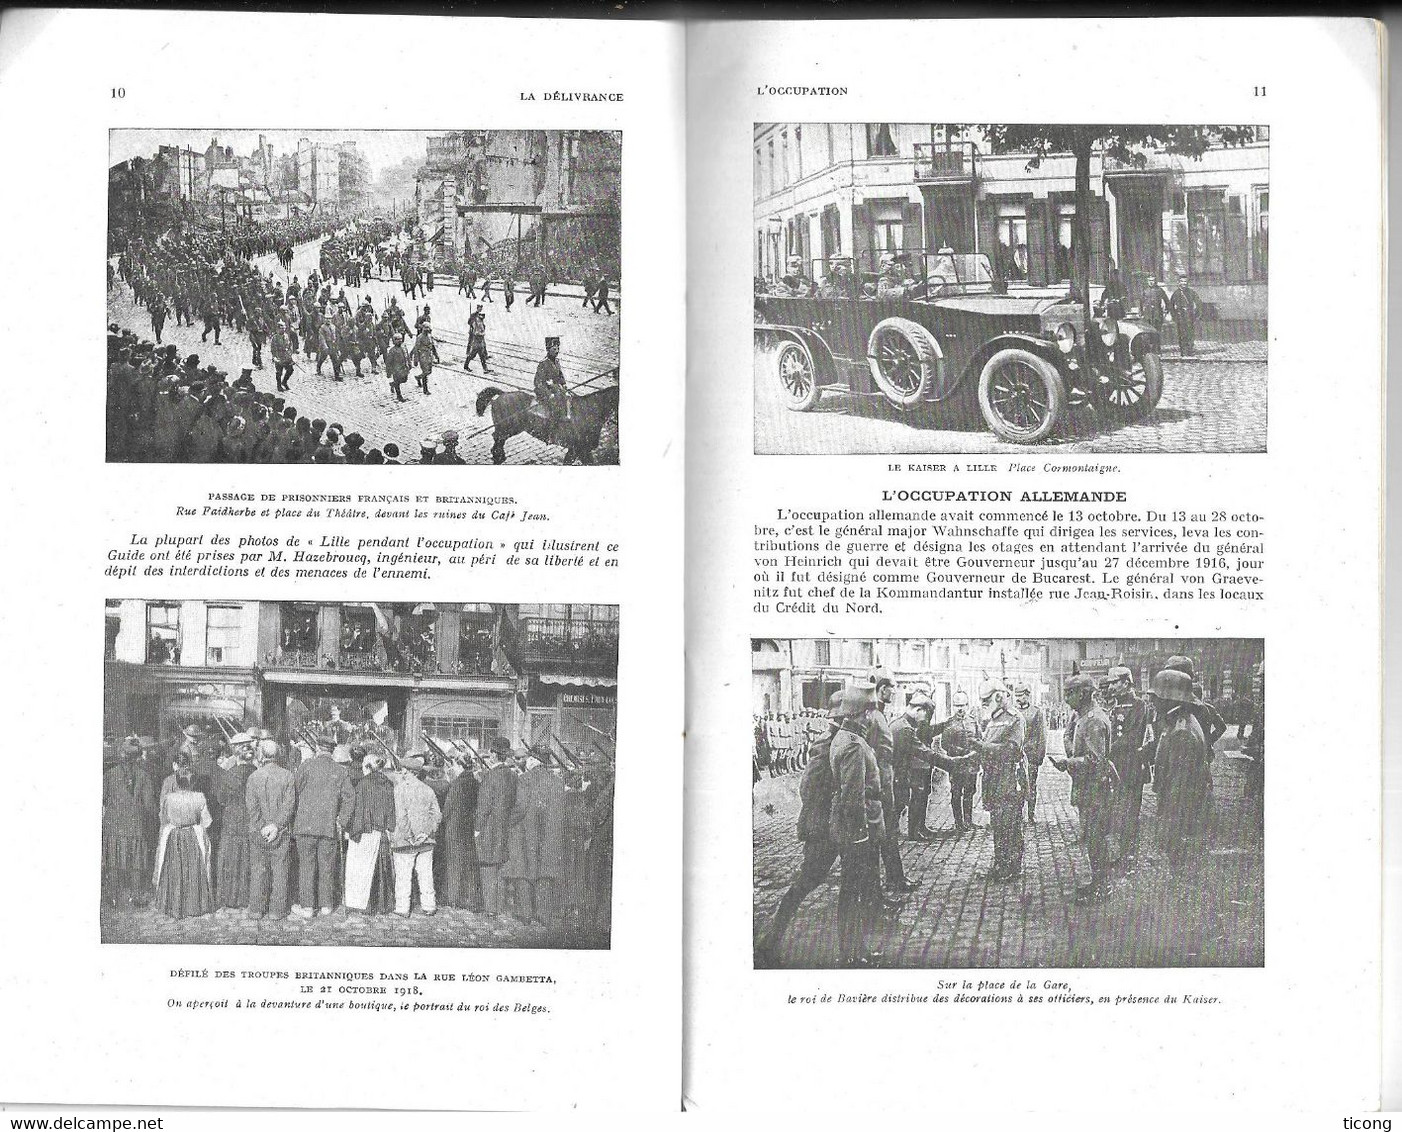 MICHELIN GUIDE ILLUSTRE MILITAIRE LES CHAMPS DE BATAILLES 1914 1918 - LILLE AVANT ET PENDANT LA GUERRE - EDITE EN 1920 - Michelin (guide)